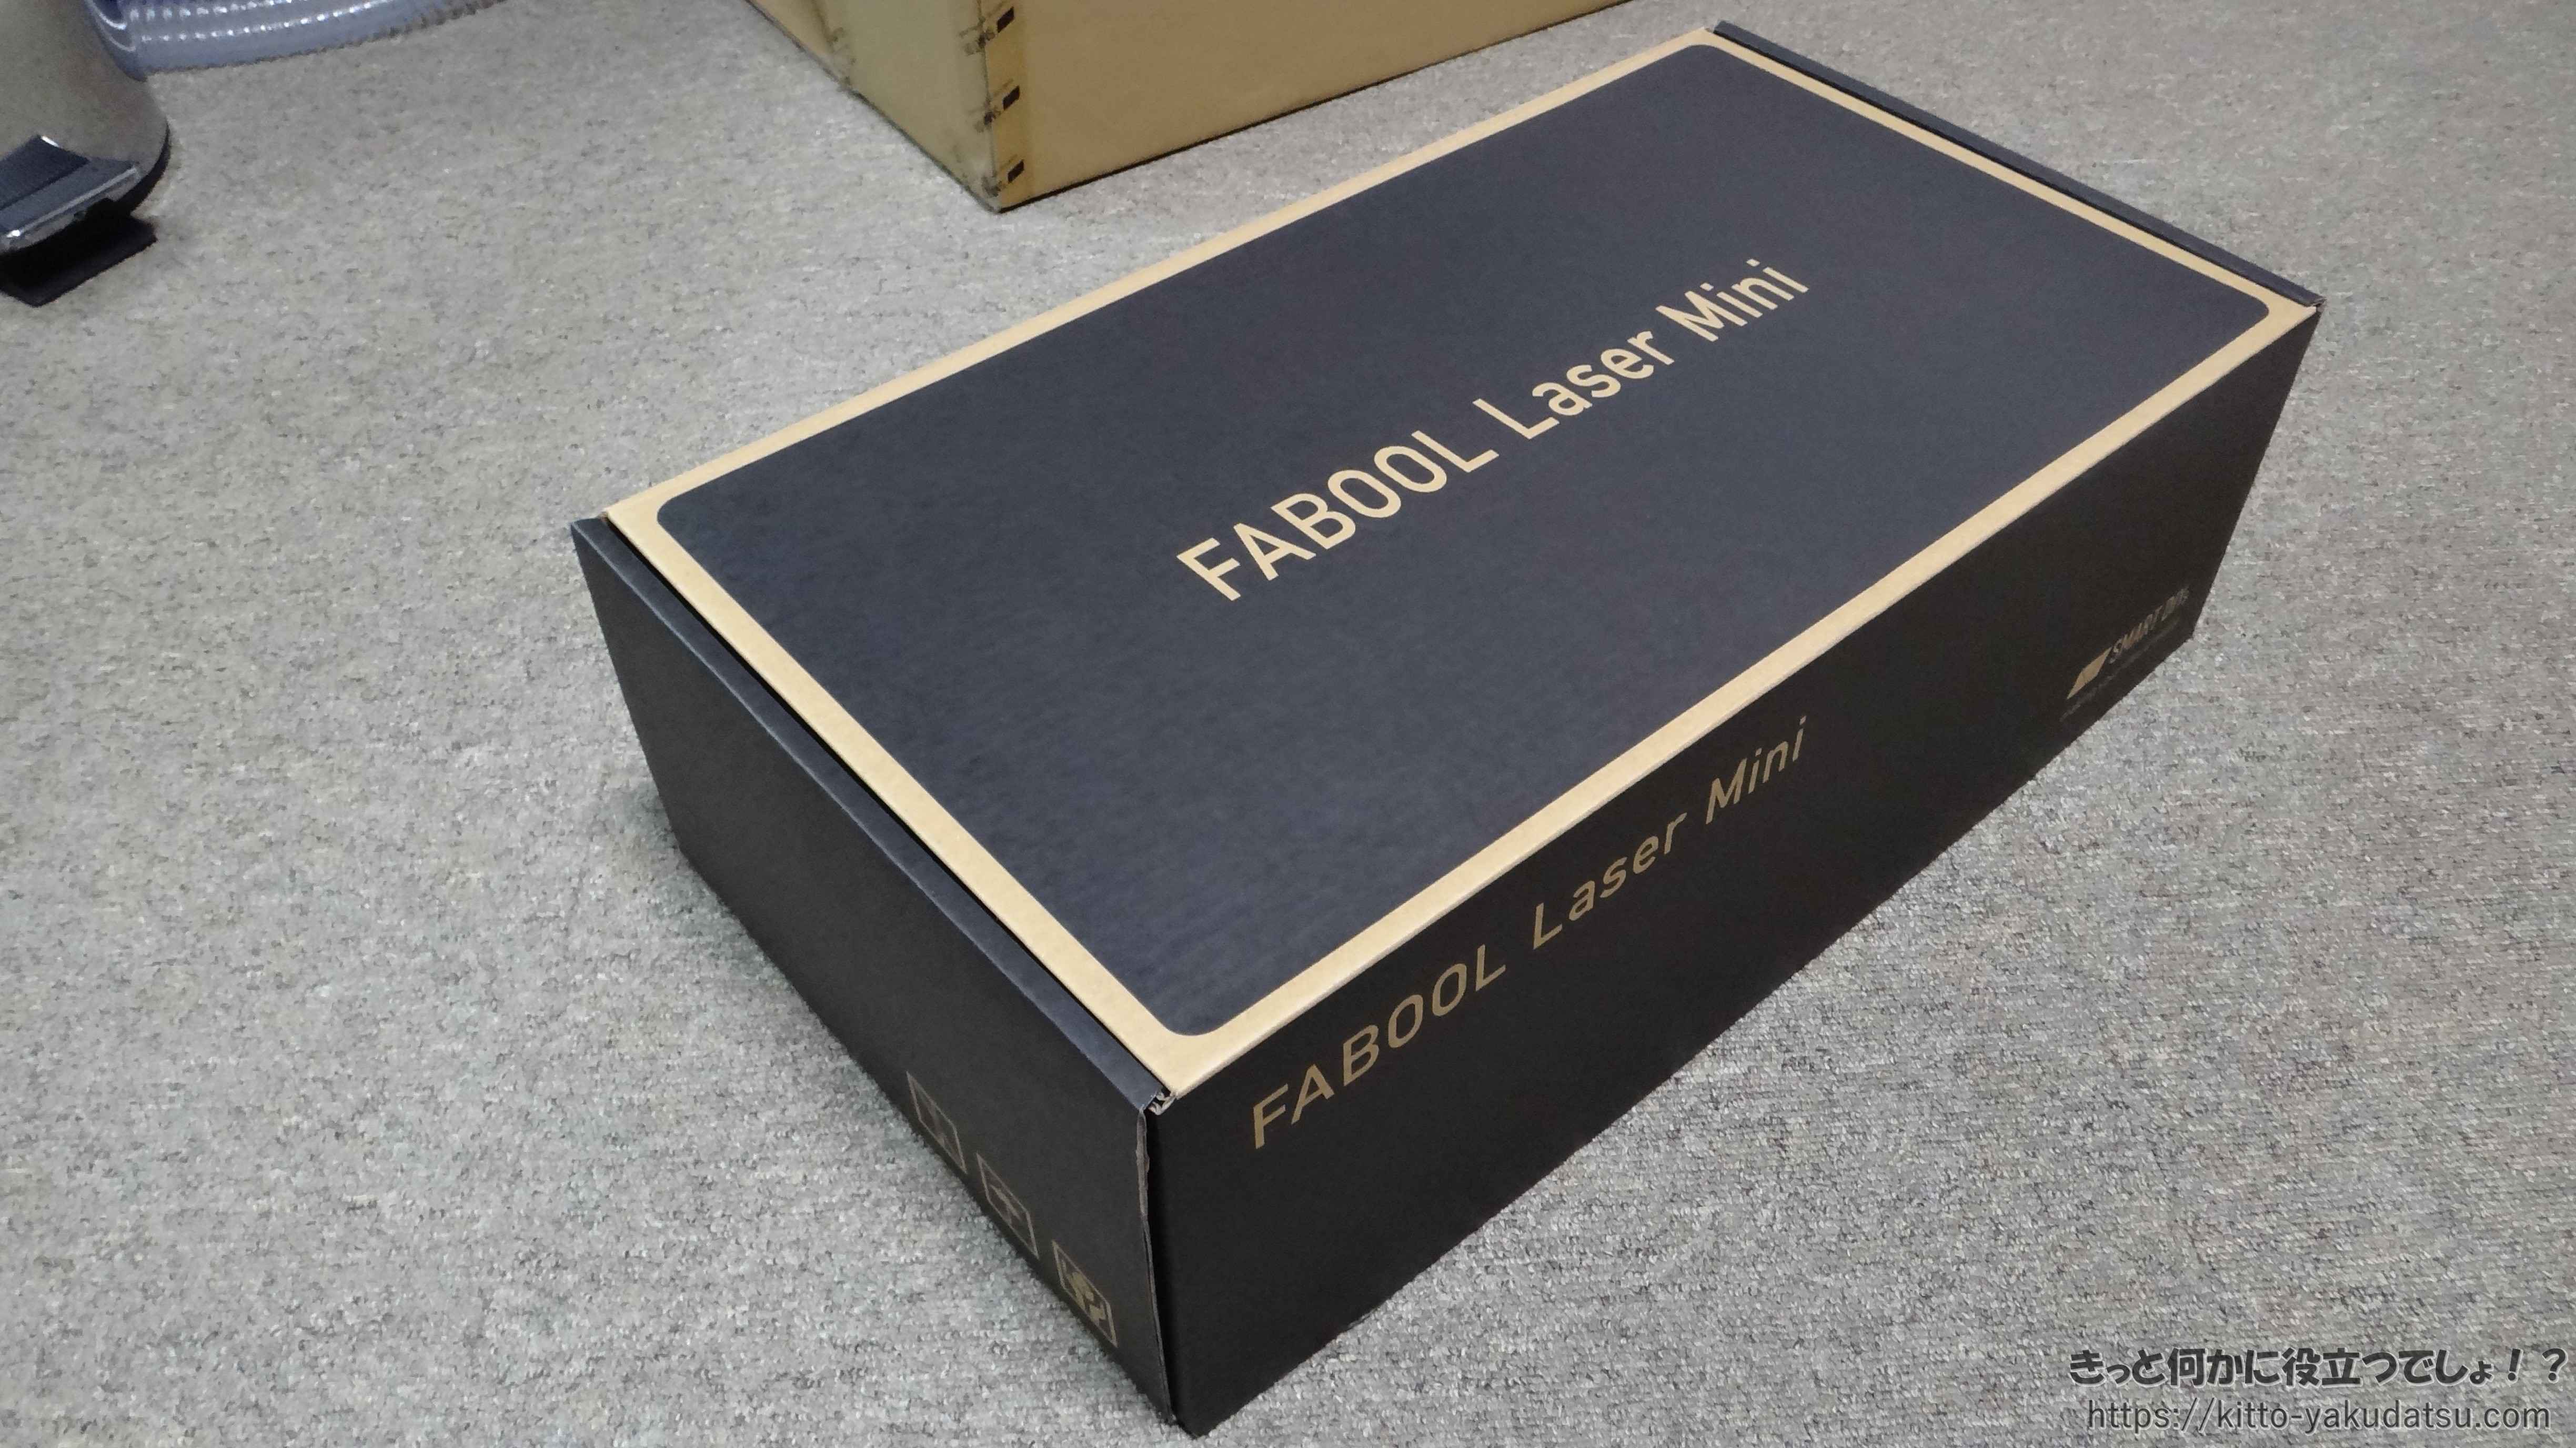 FABOOL Laser Mini 3.5W＆拡張フレームセット （開梱編） | きっと何か 